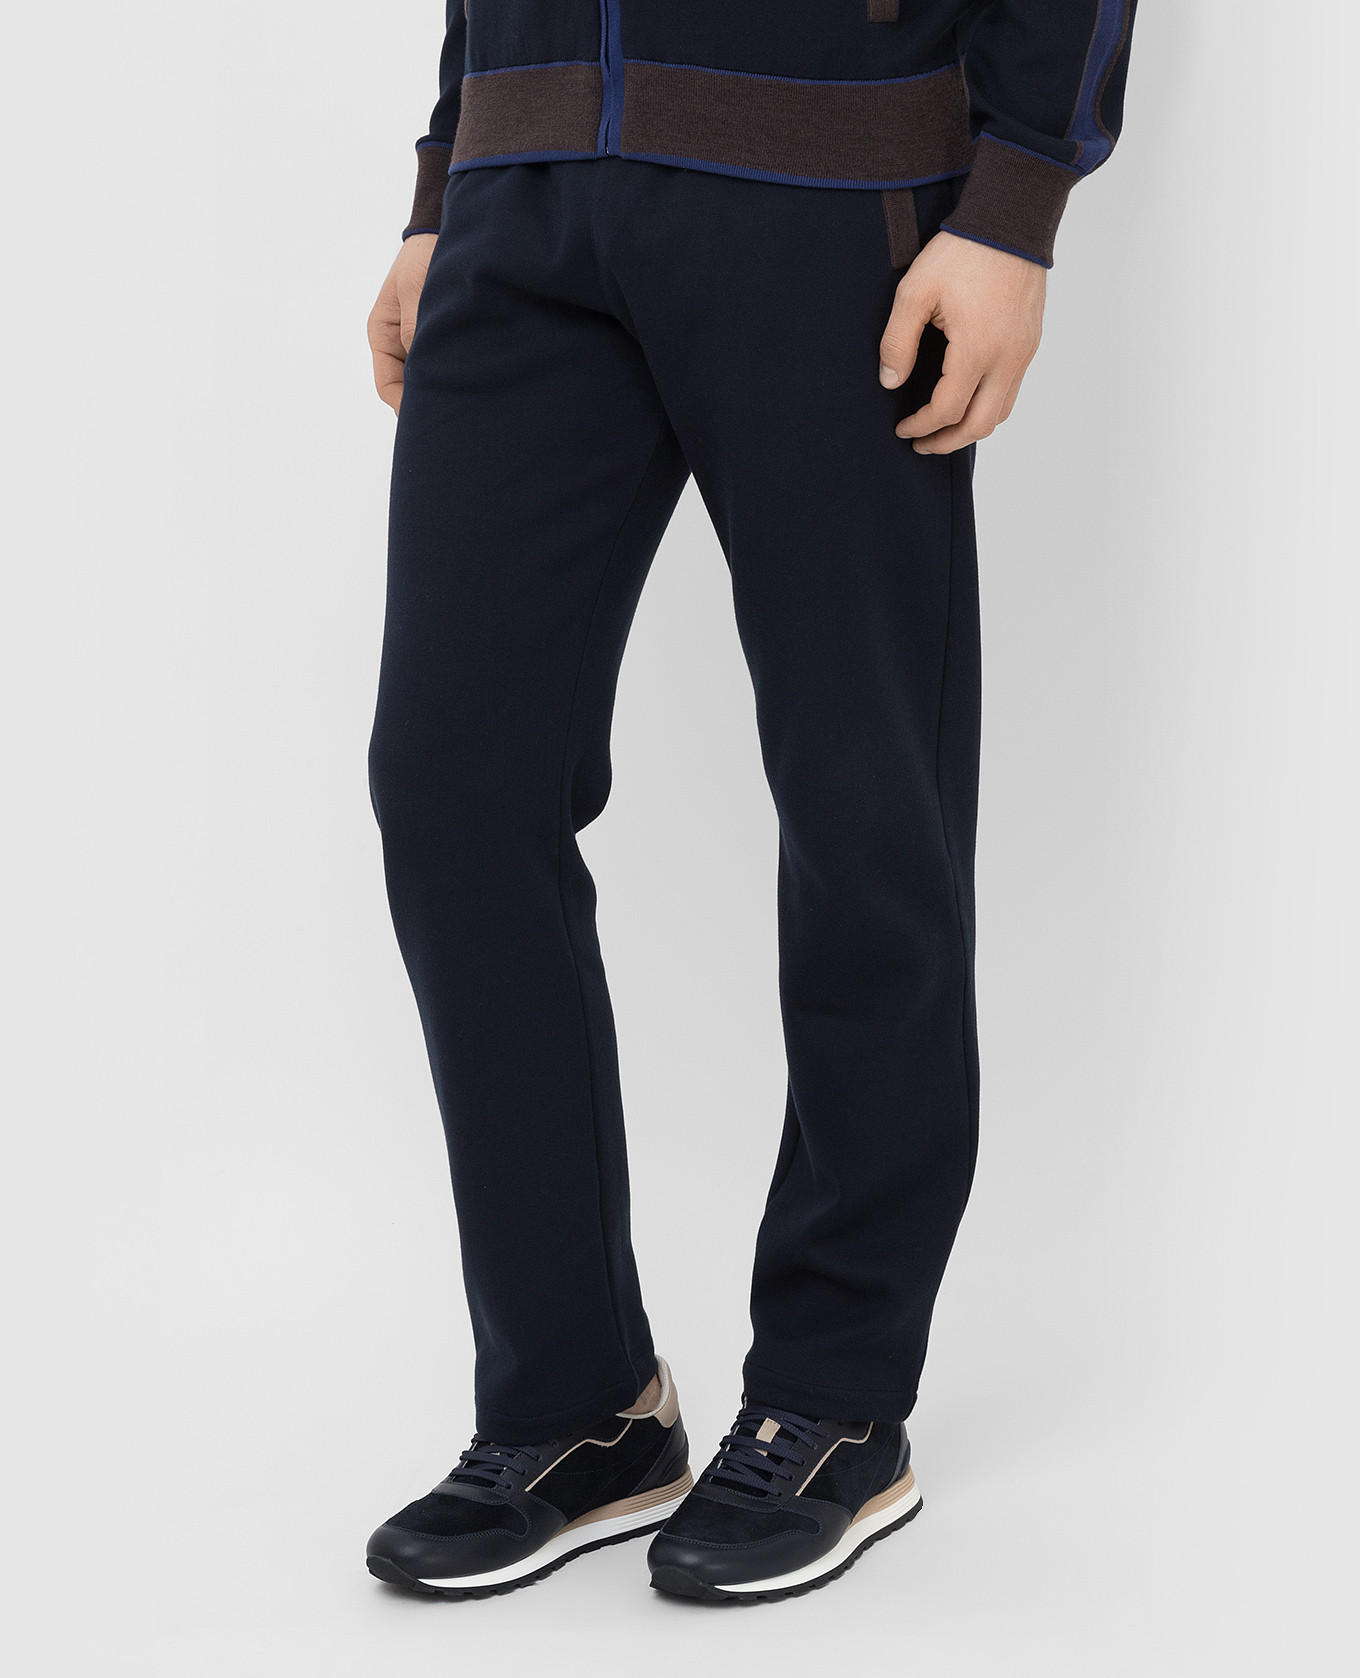 Bertolo Cashmere Темно-синие спортивные брюки 902088001965 изображение 3